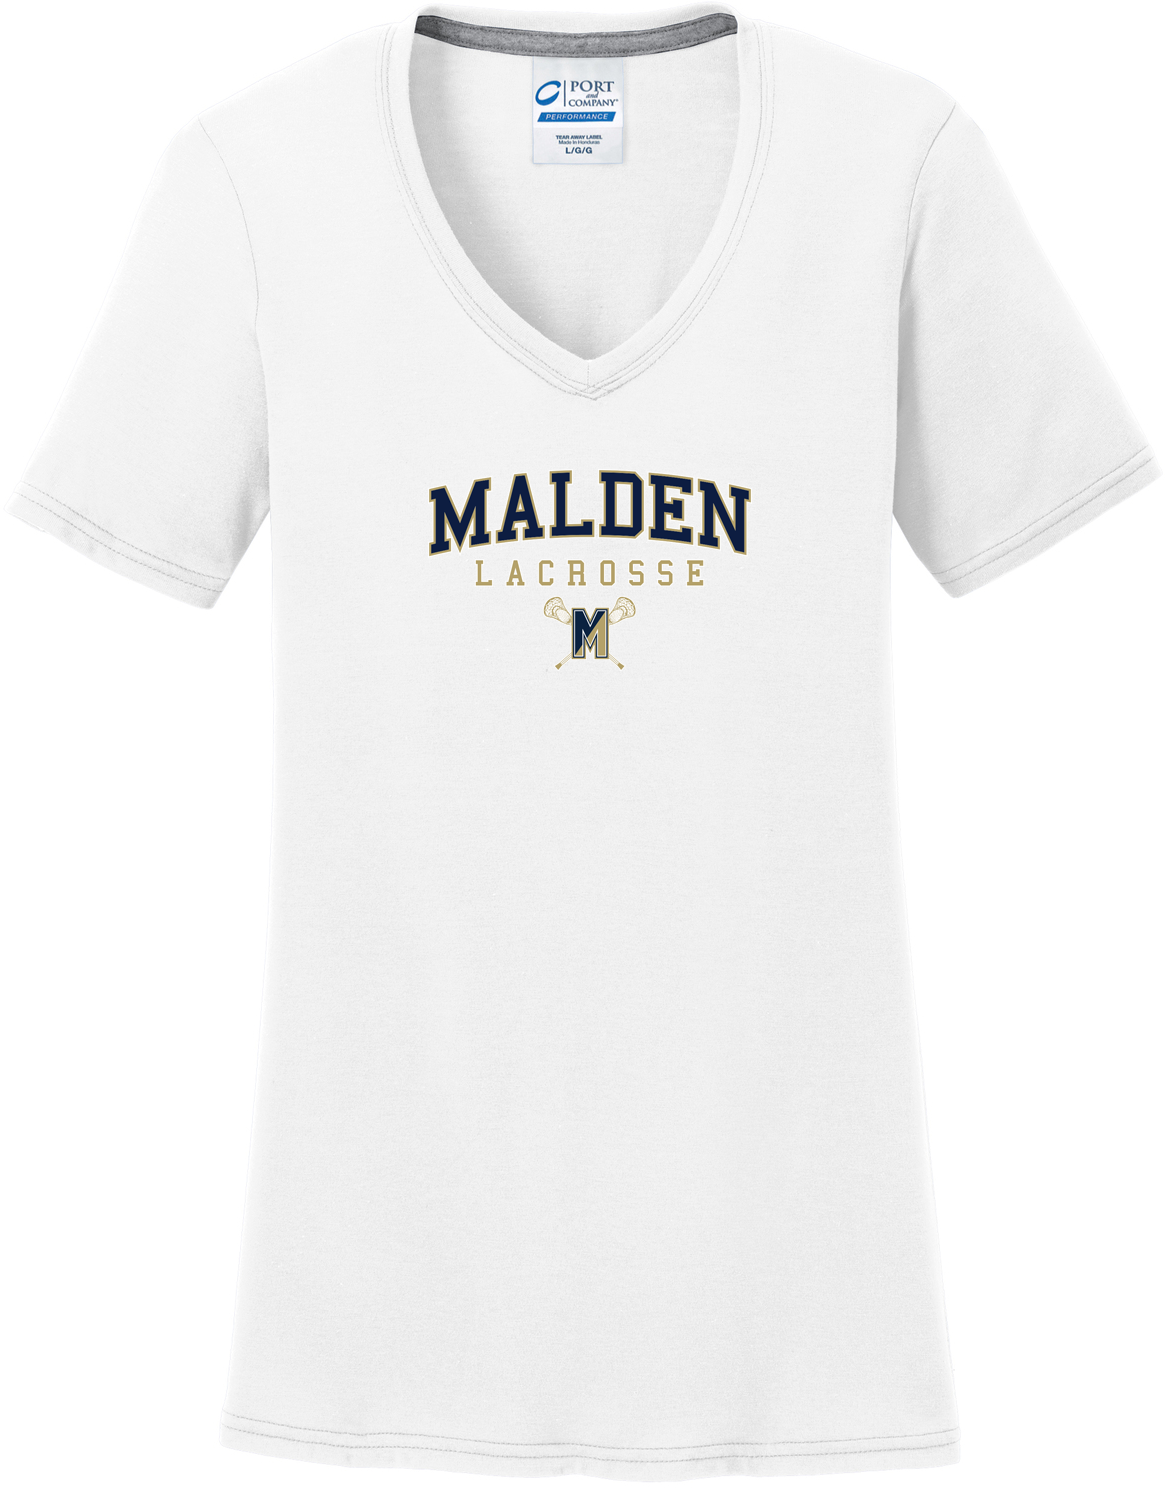 Malden Lacrosse Women's Royal T-Shirt